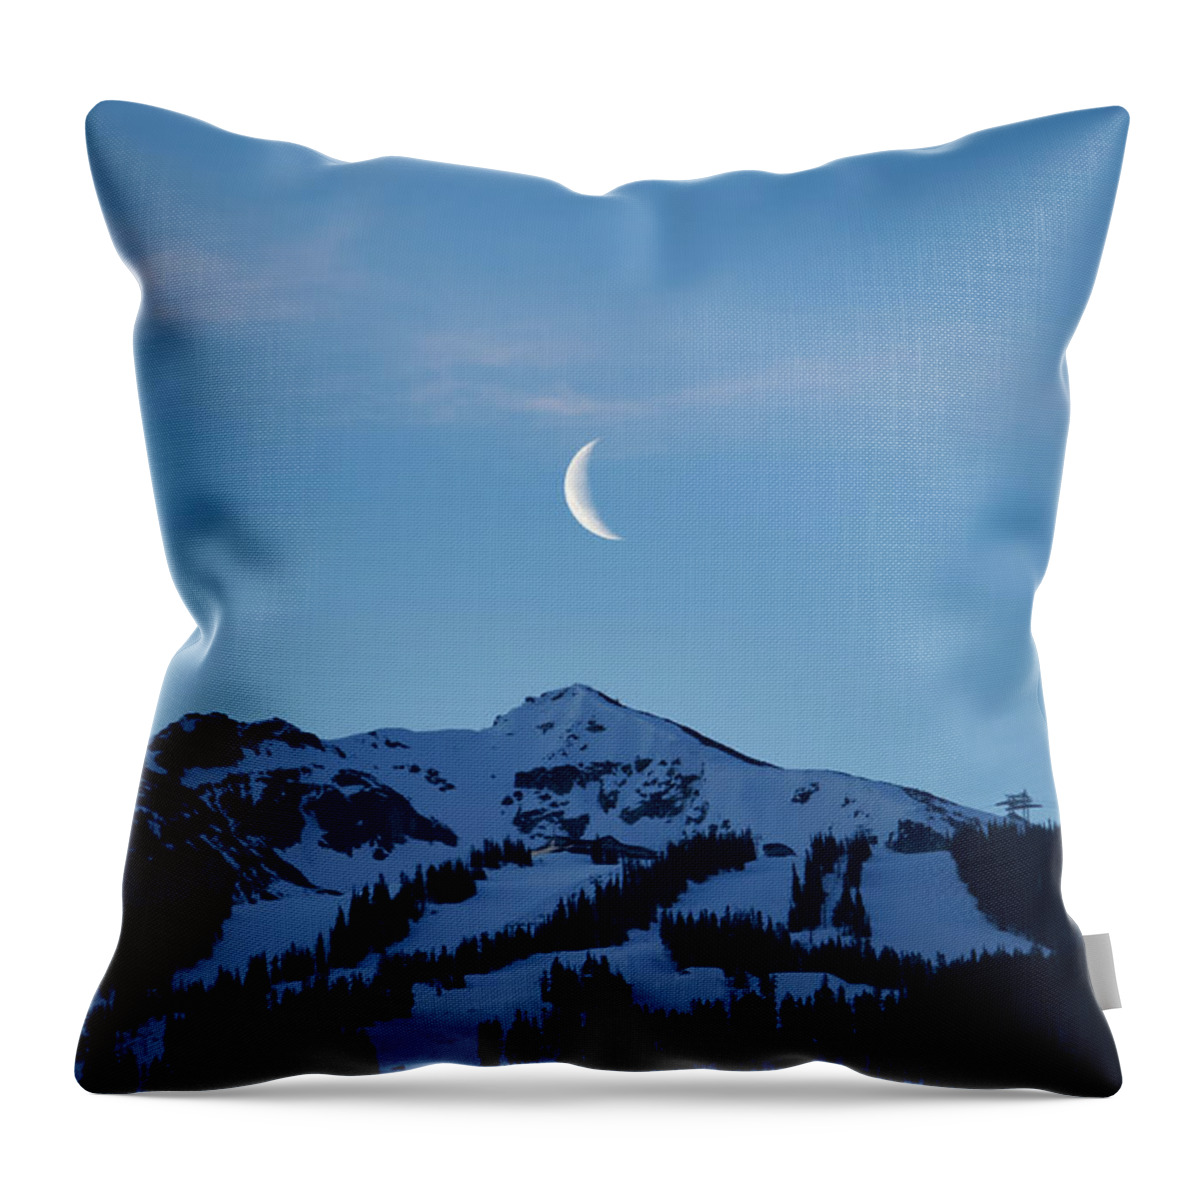 Blackcomb Throw Pillow featuring the photograph Moon Rising Over Whistler Blackcomb by Rick Deacon